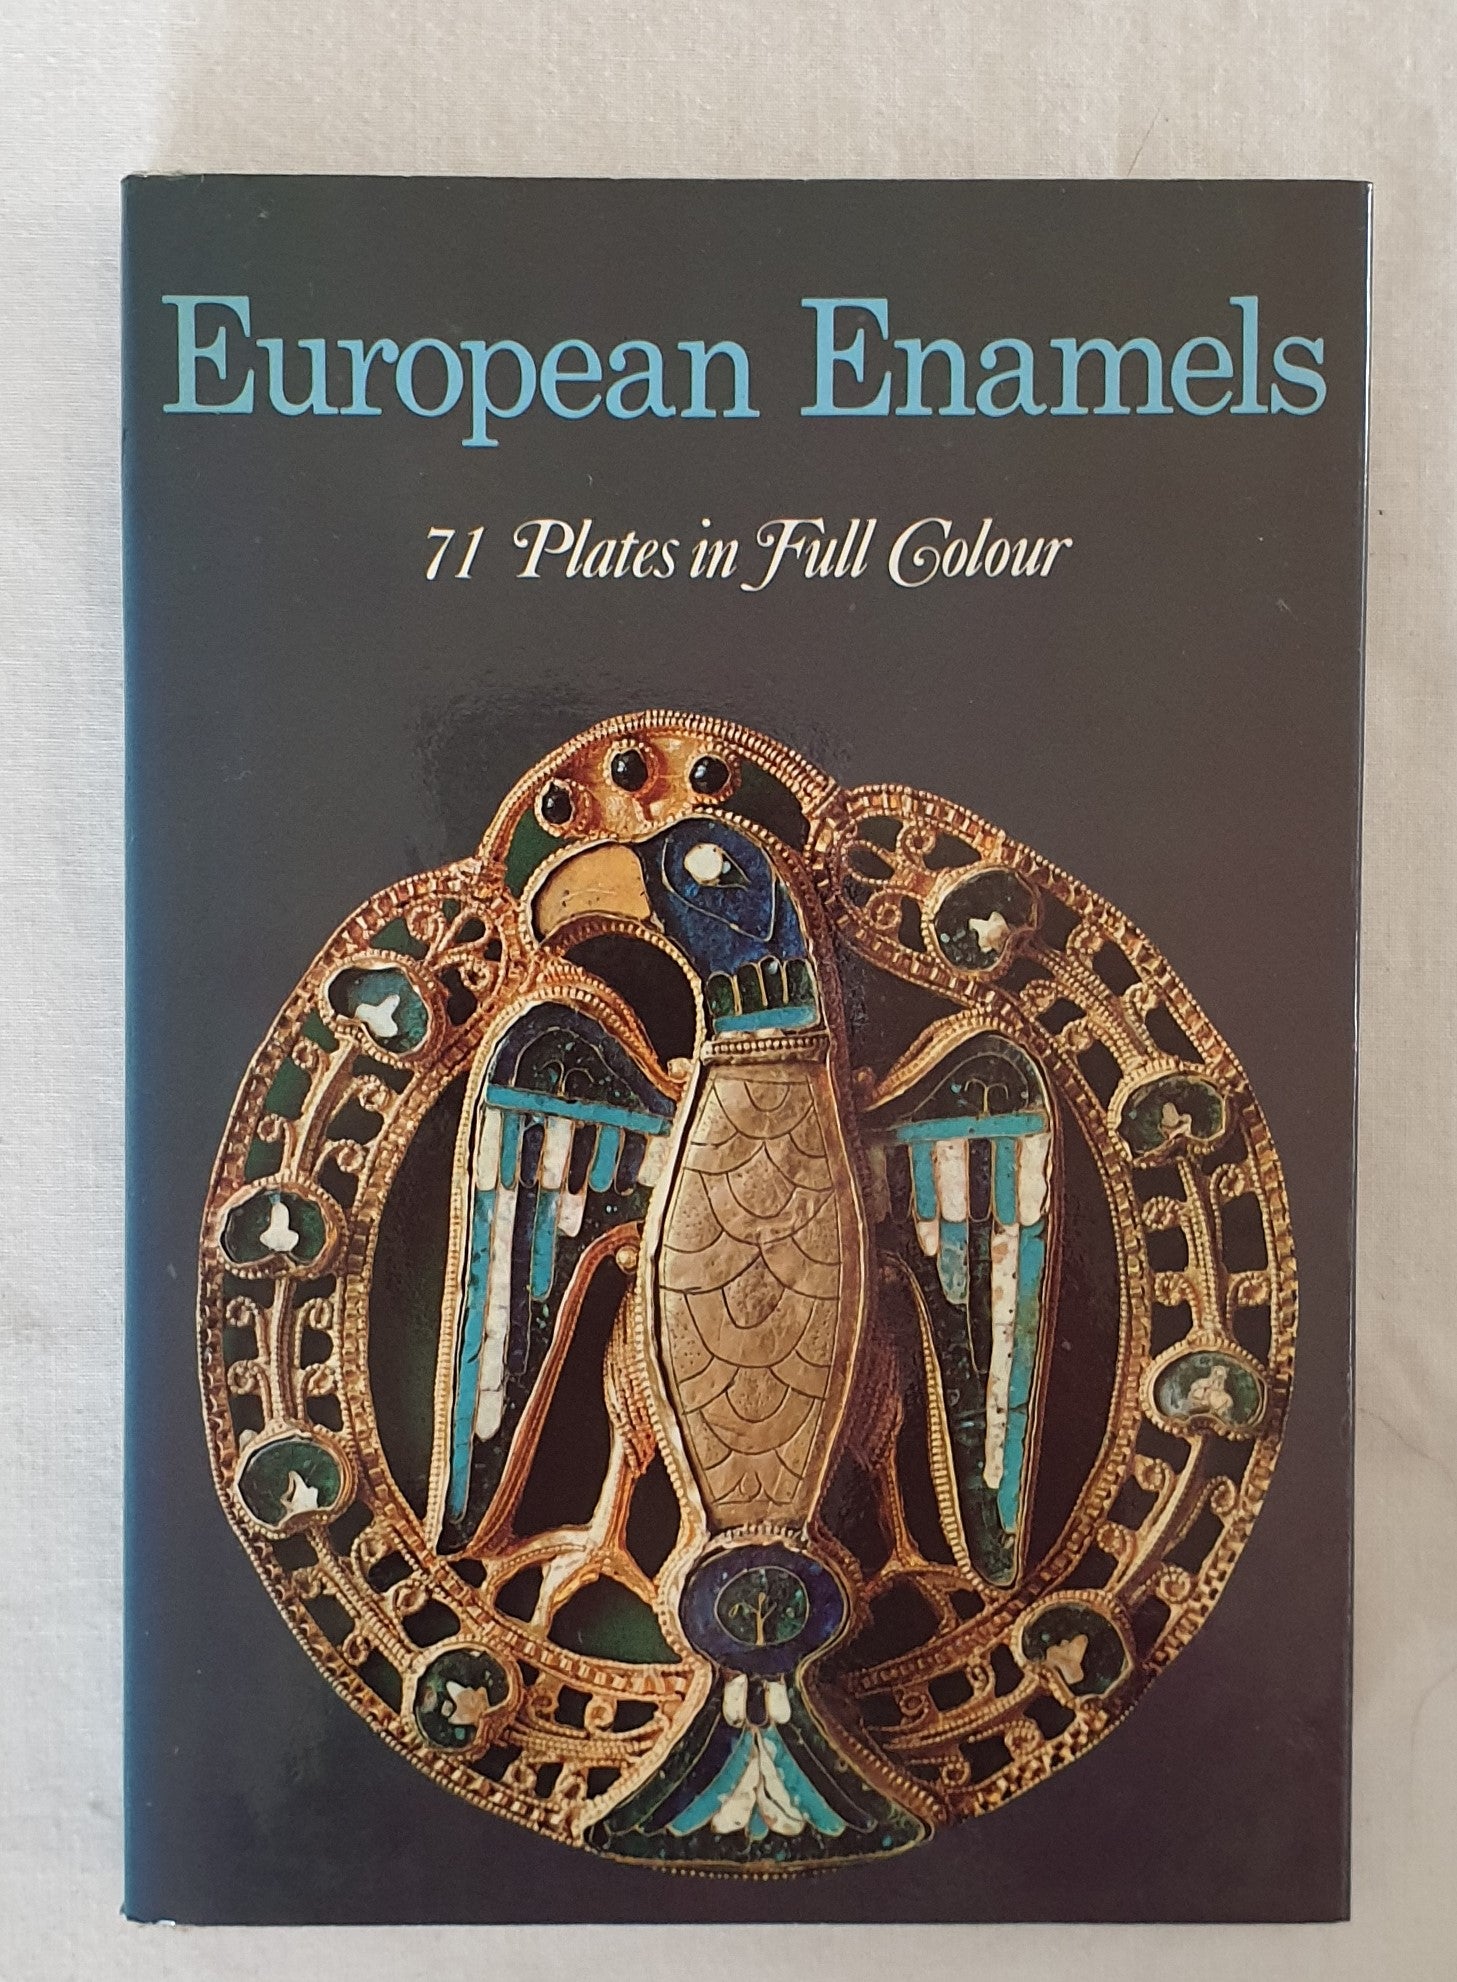 European Enamels by Isa Belli Barsali